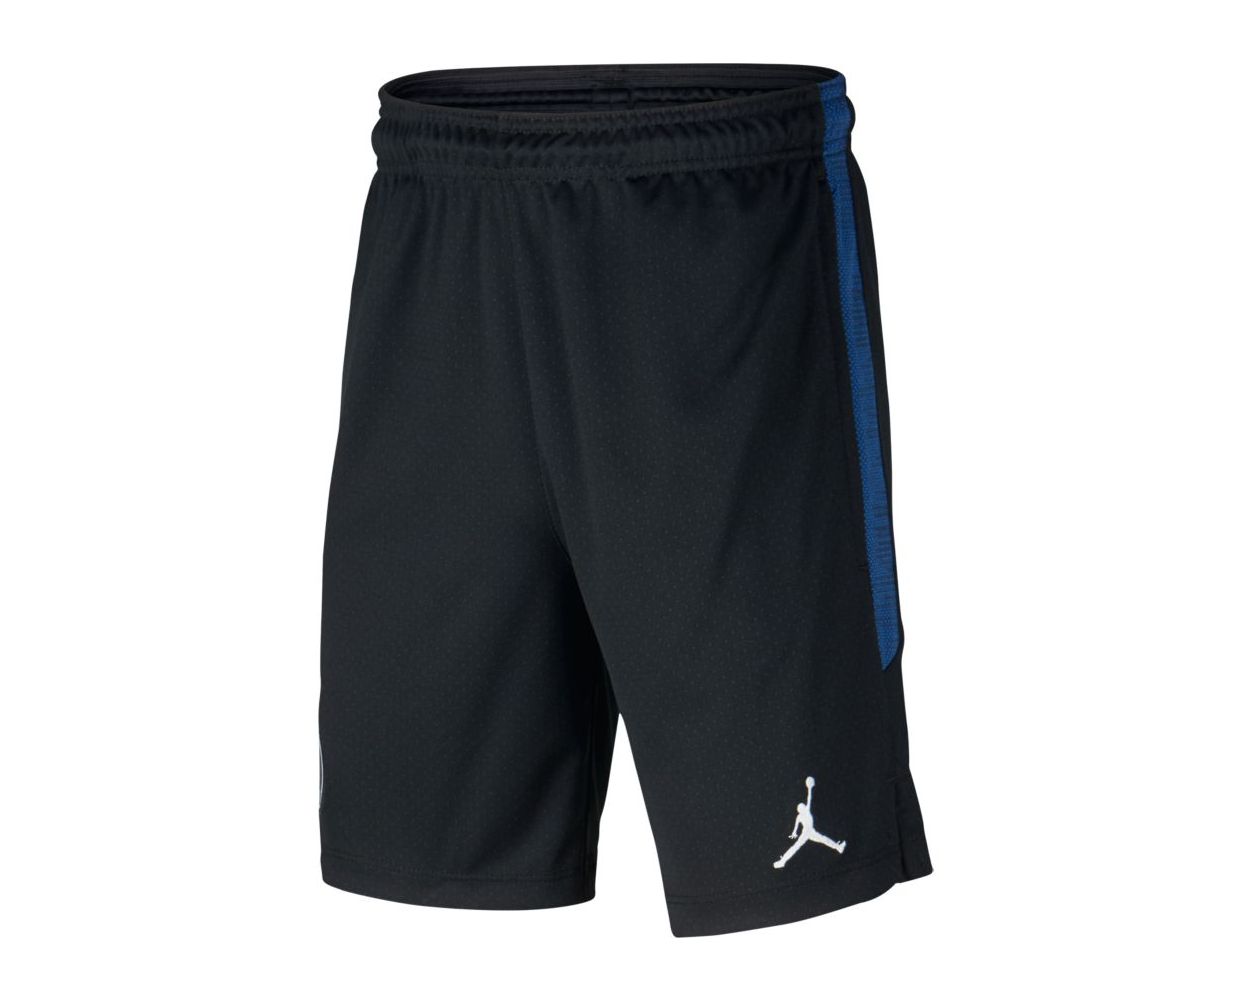 Nike PSG x Jordan Strike Shorts Youth 2019/20 - Black